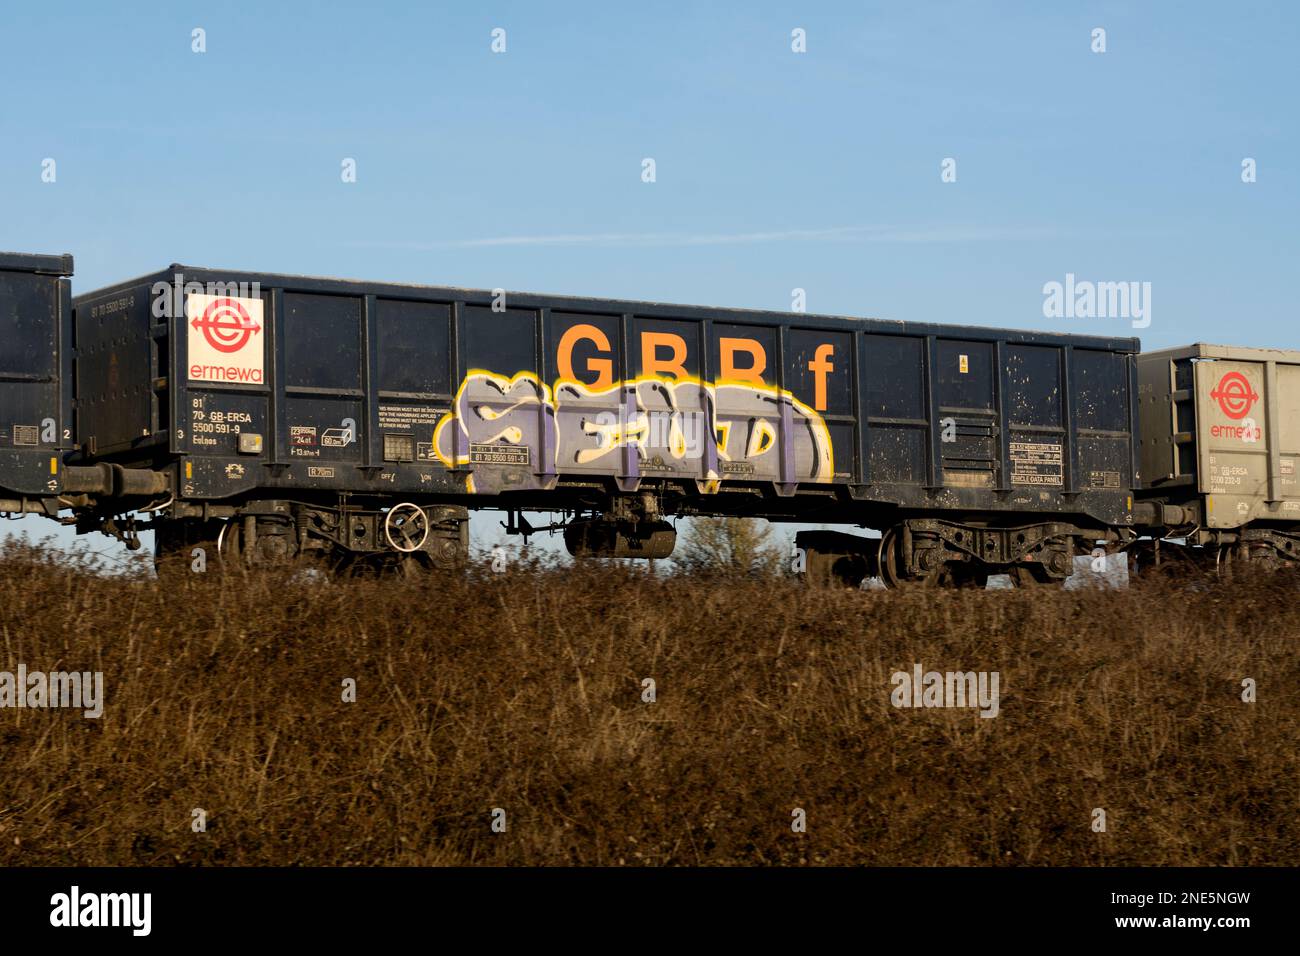 GBRf ballast wagon with graffiti, Warwickshire, UK Stock Photo